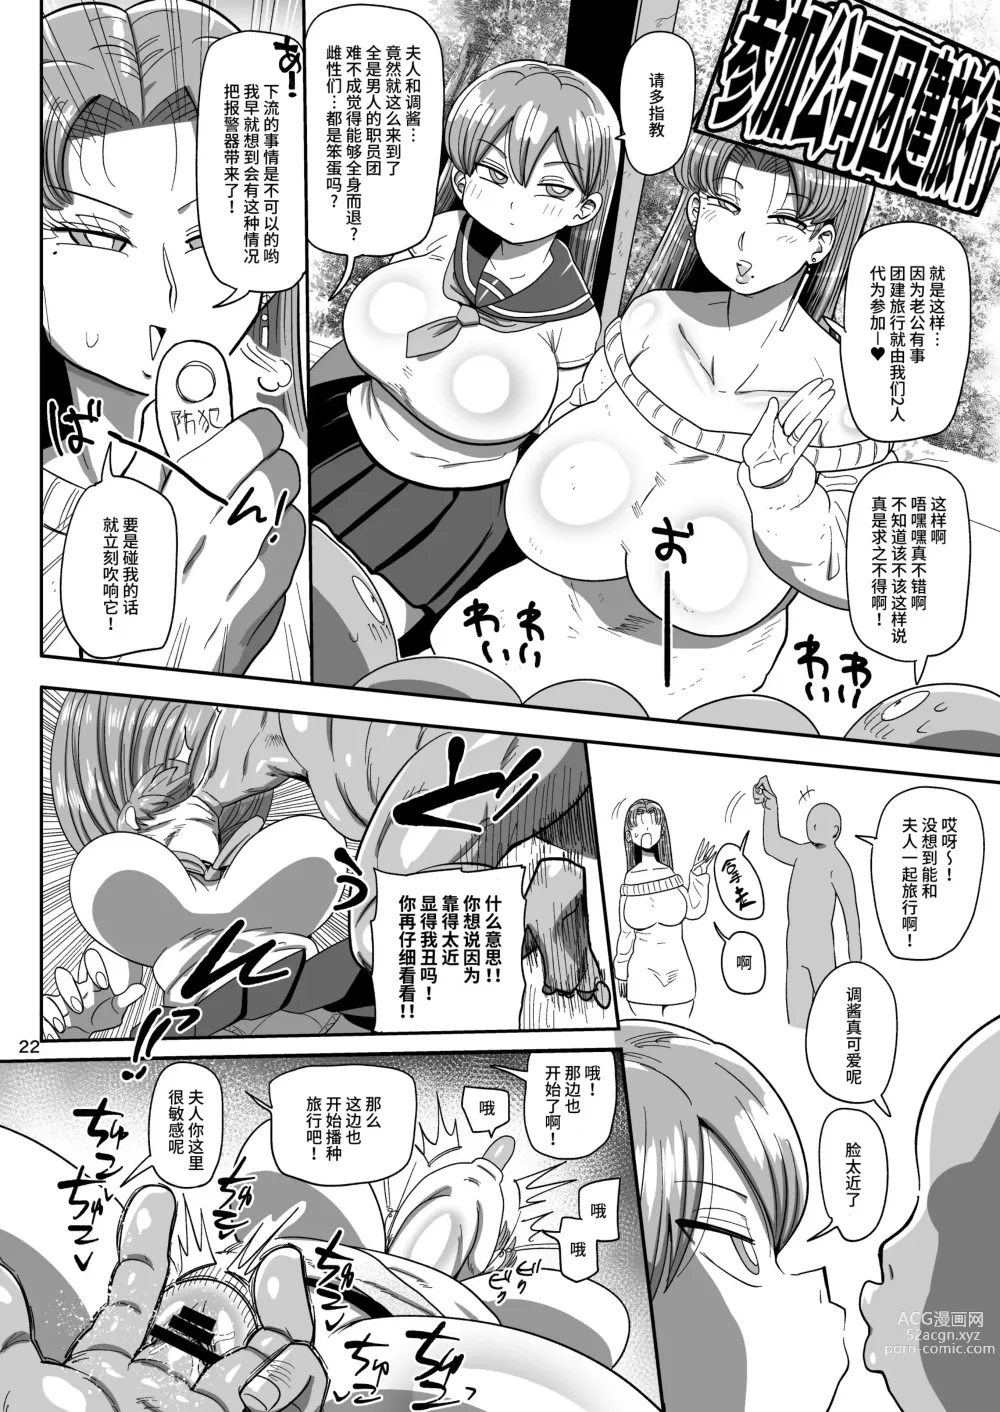 Page 21 of doujinshi Nandemo Chousa Mama Kuma Shizue ha TEIKO ga dekinai